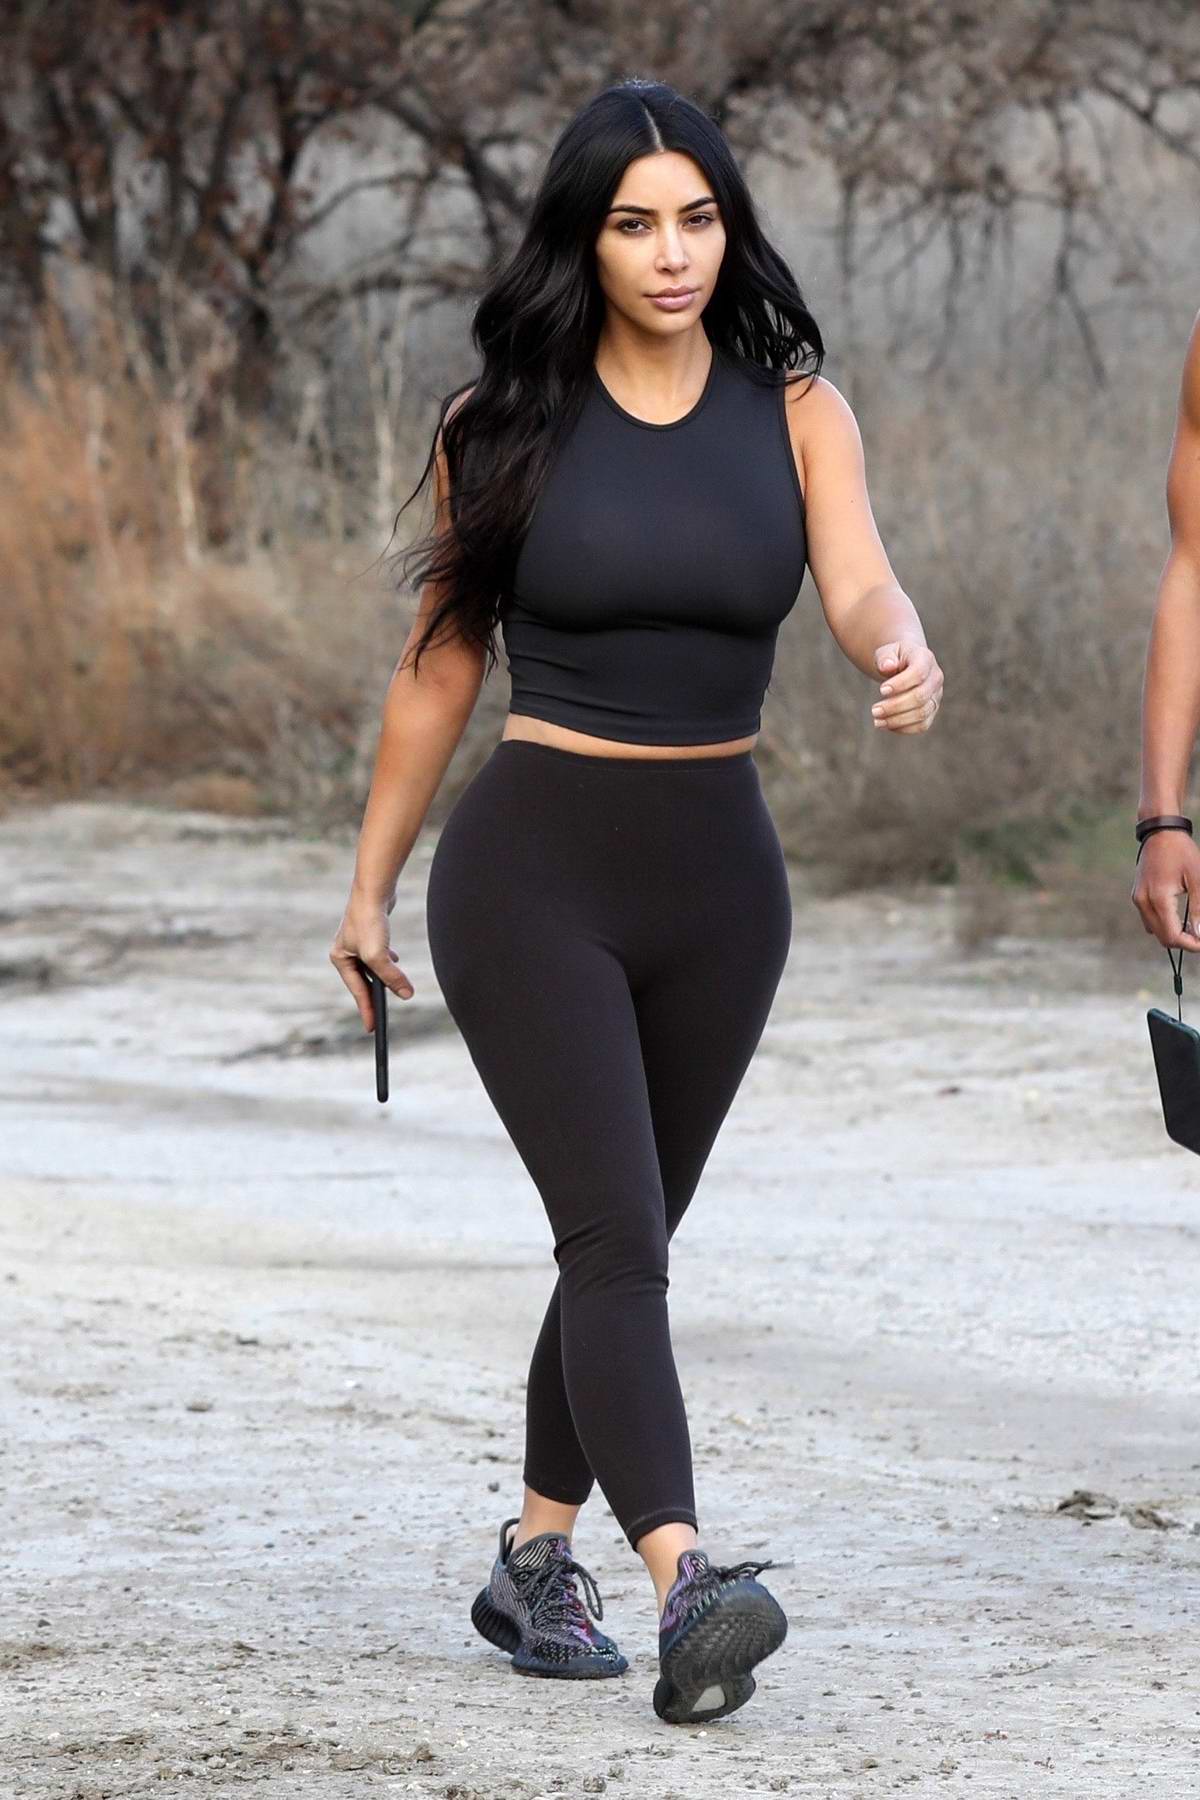 Kim Kardashian sports a black crop top and leggings as she steps